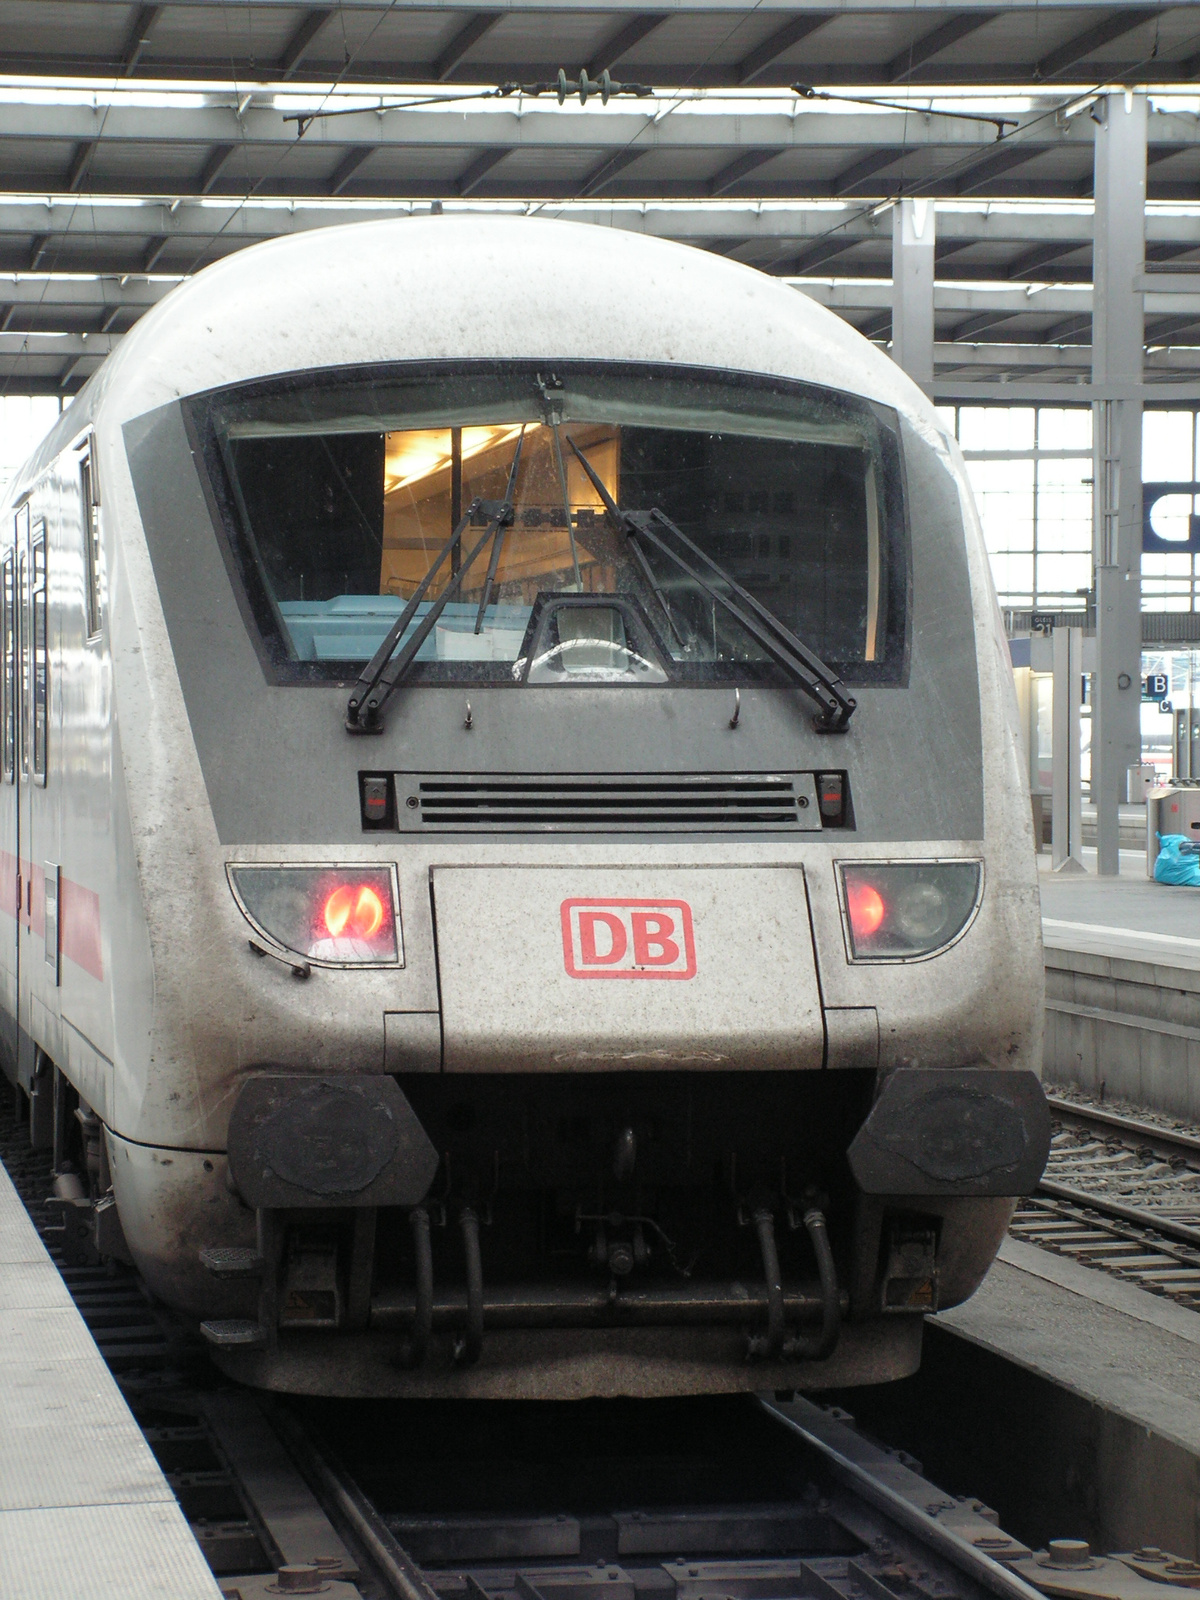 D-DB 61 80 80-91 123-2, Bpmmbdzf, SzG3